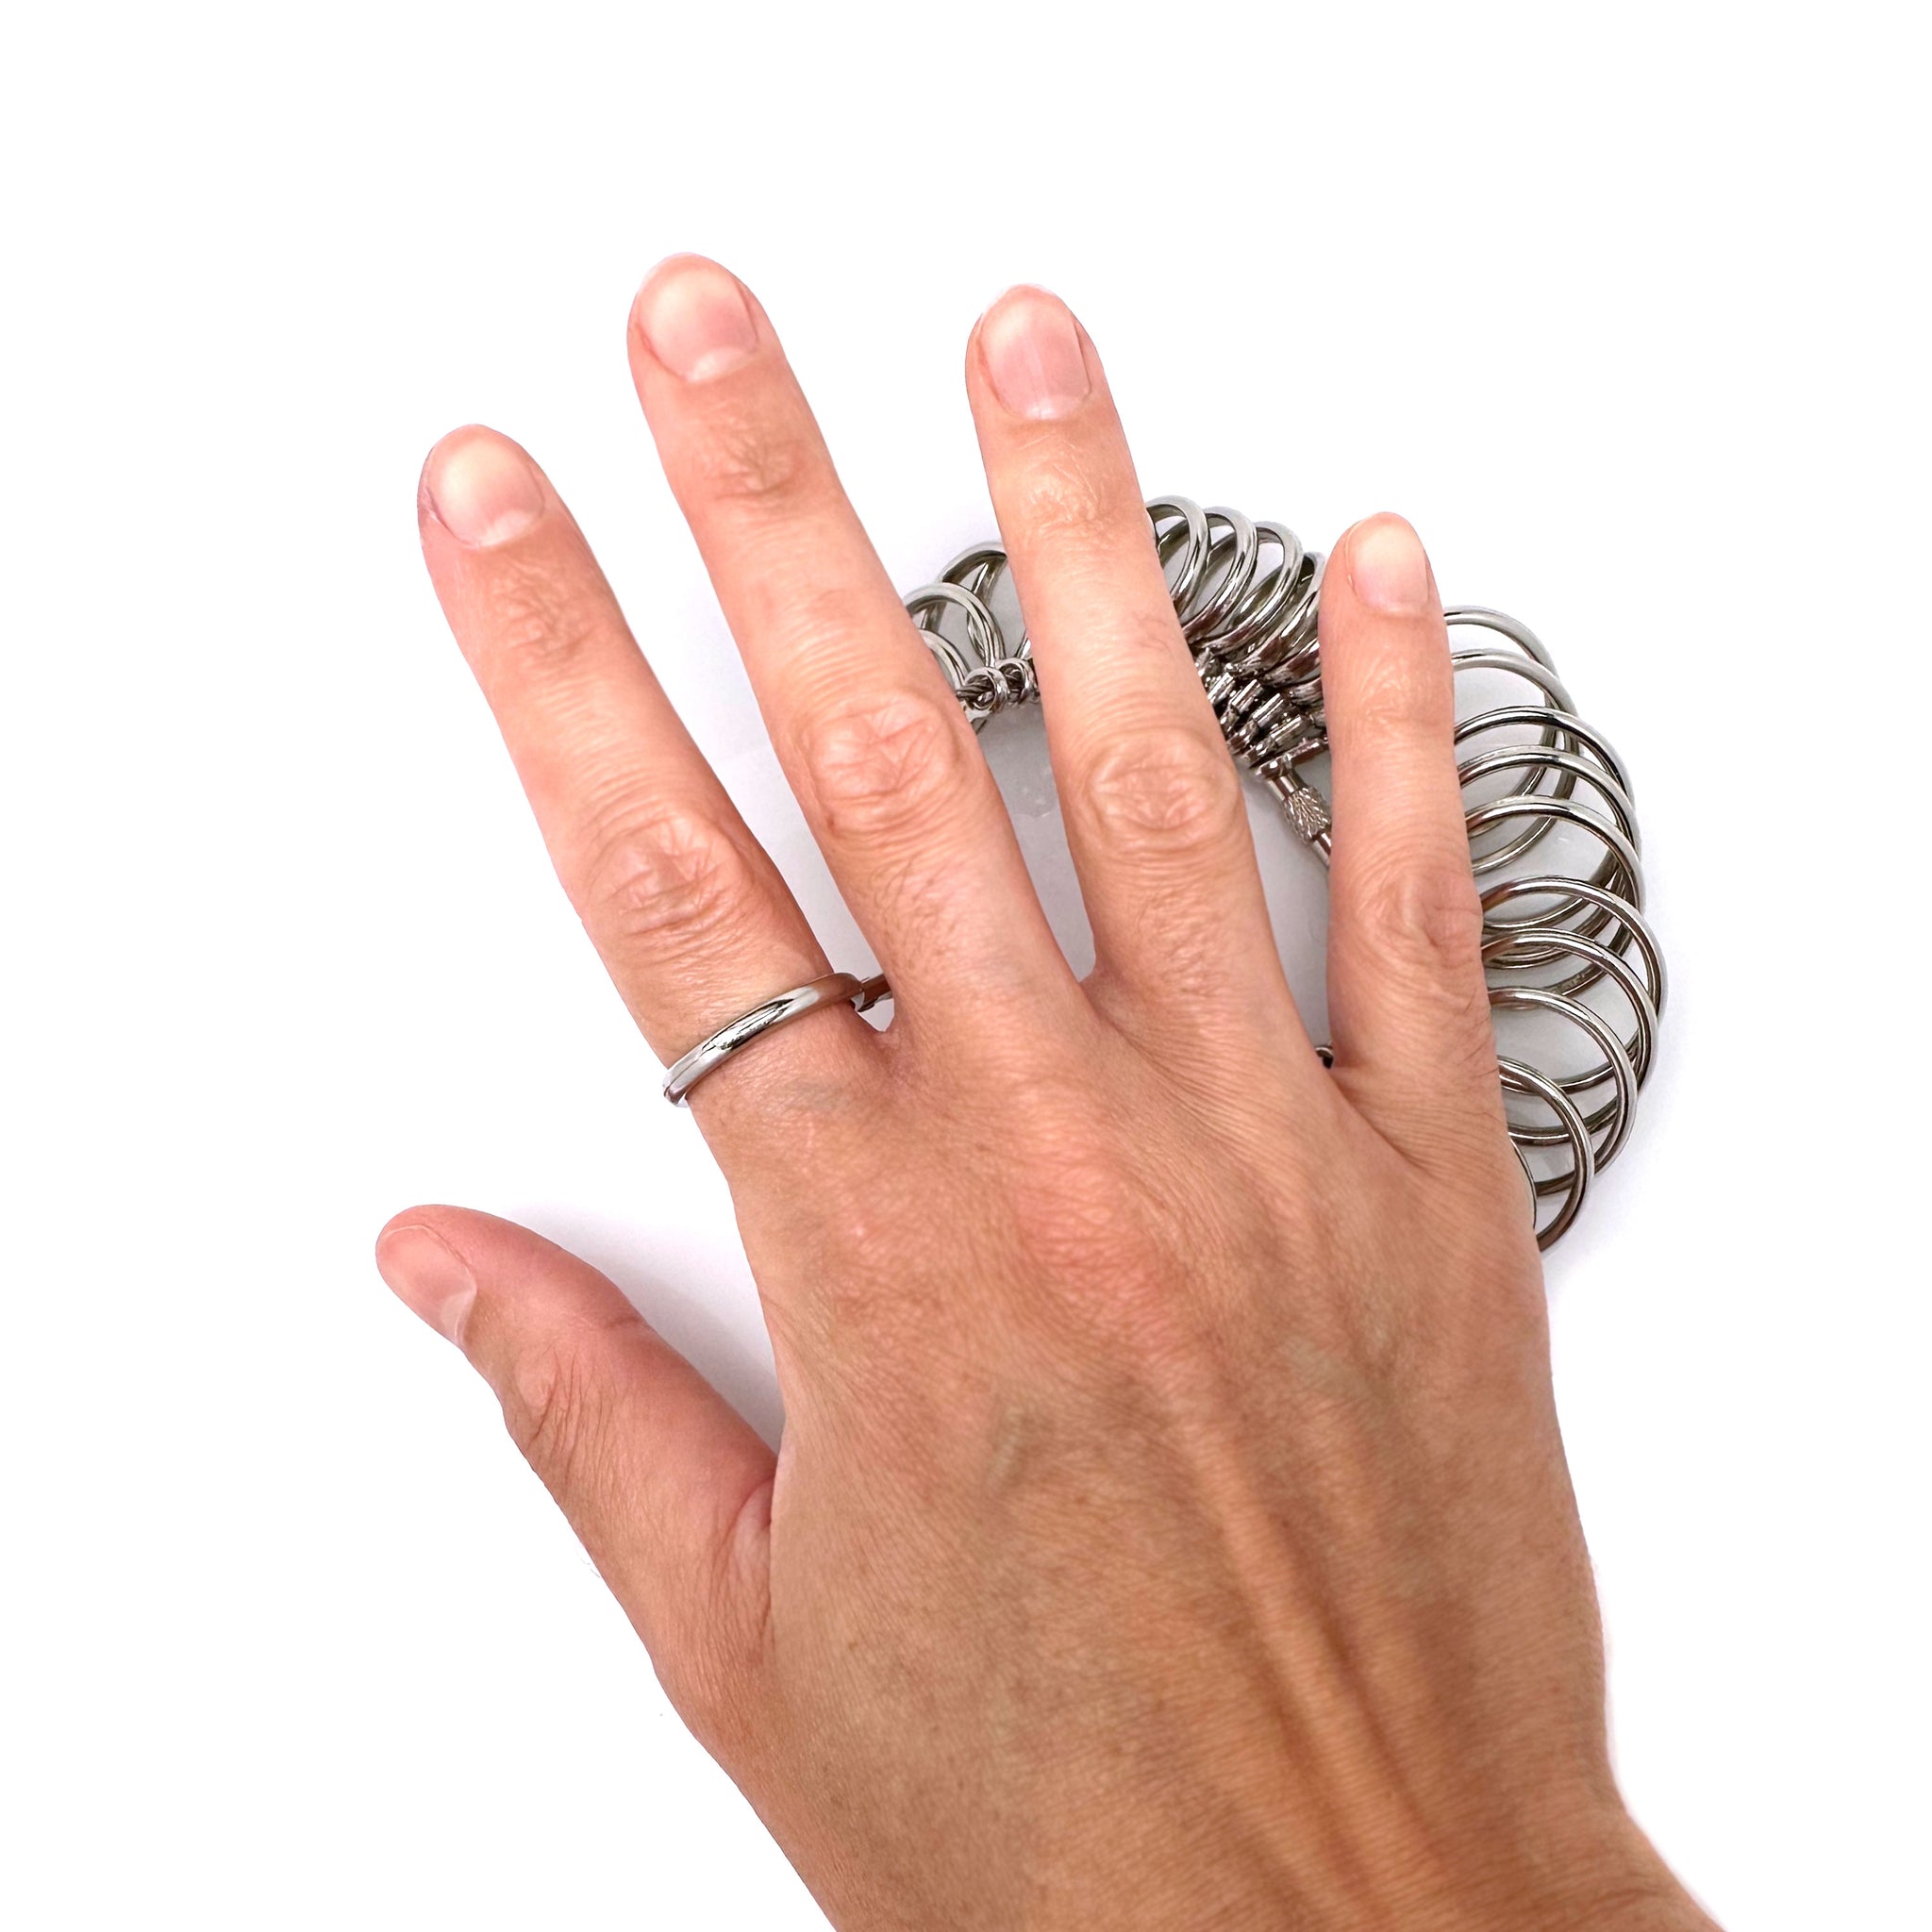 US Finger Size Measuring Gauge in Plastic or Metal Ring Sizer